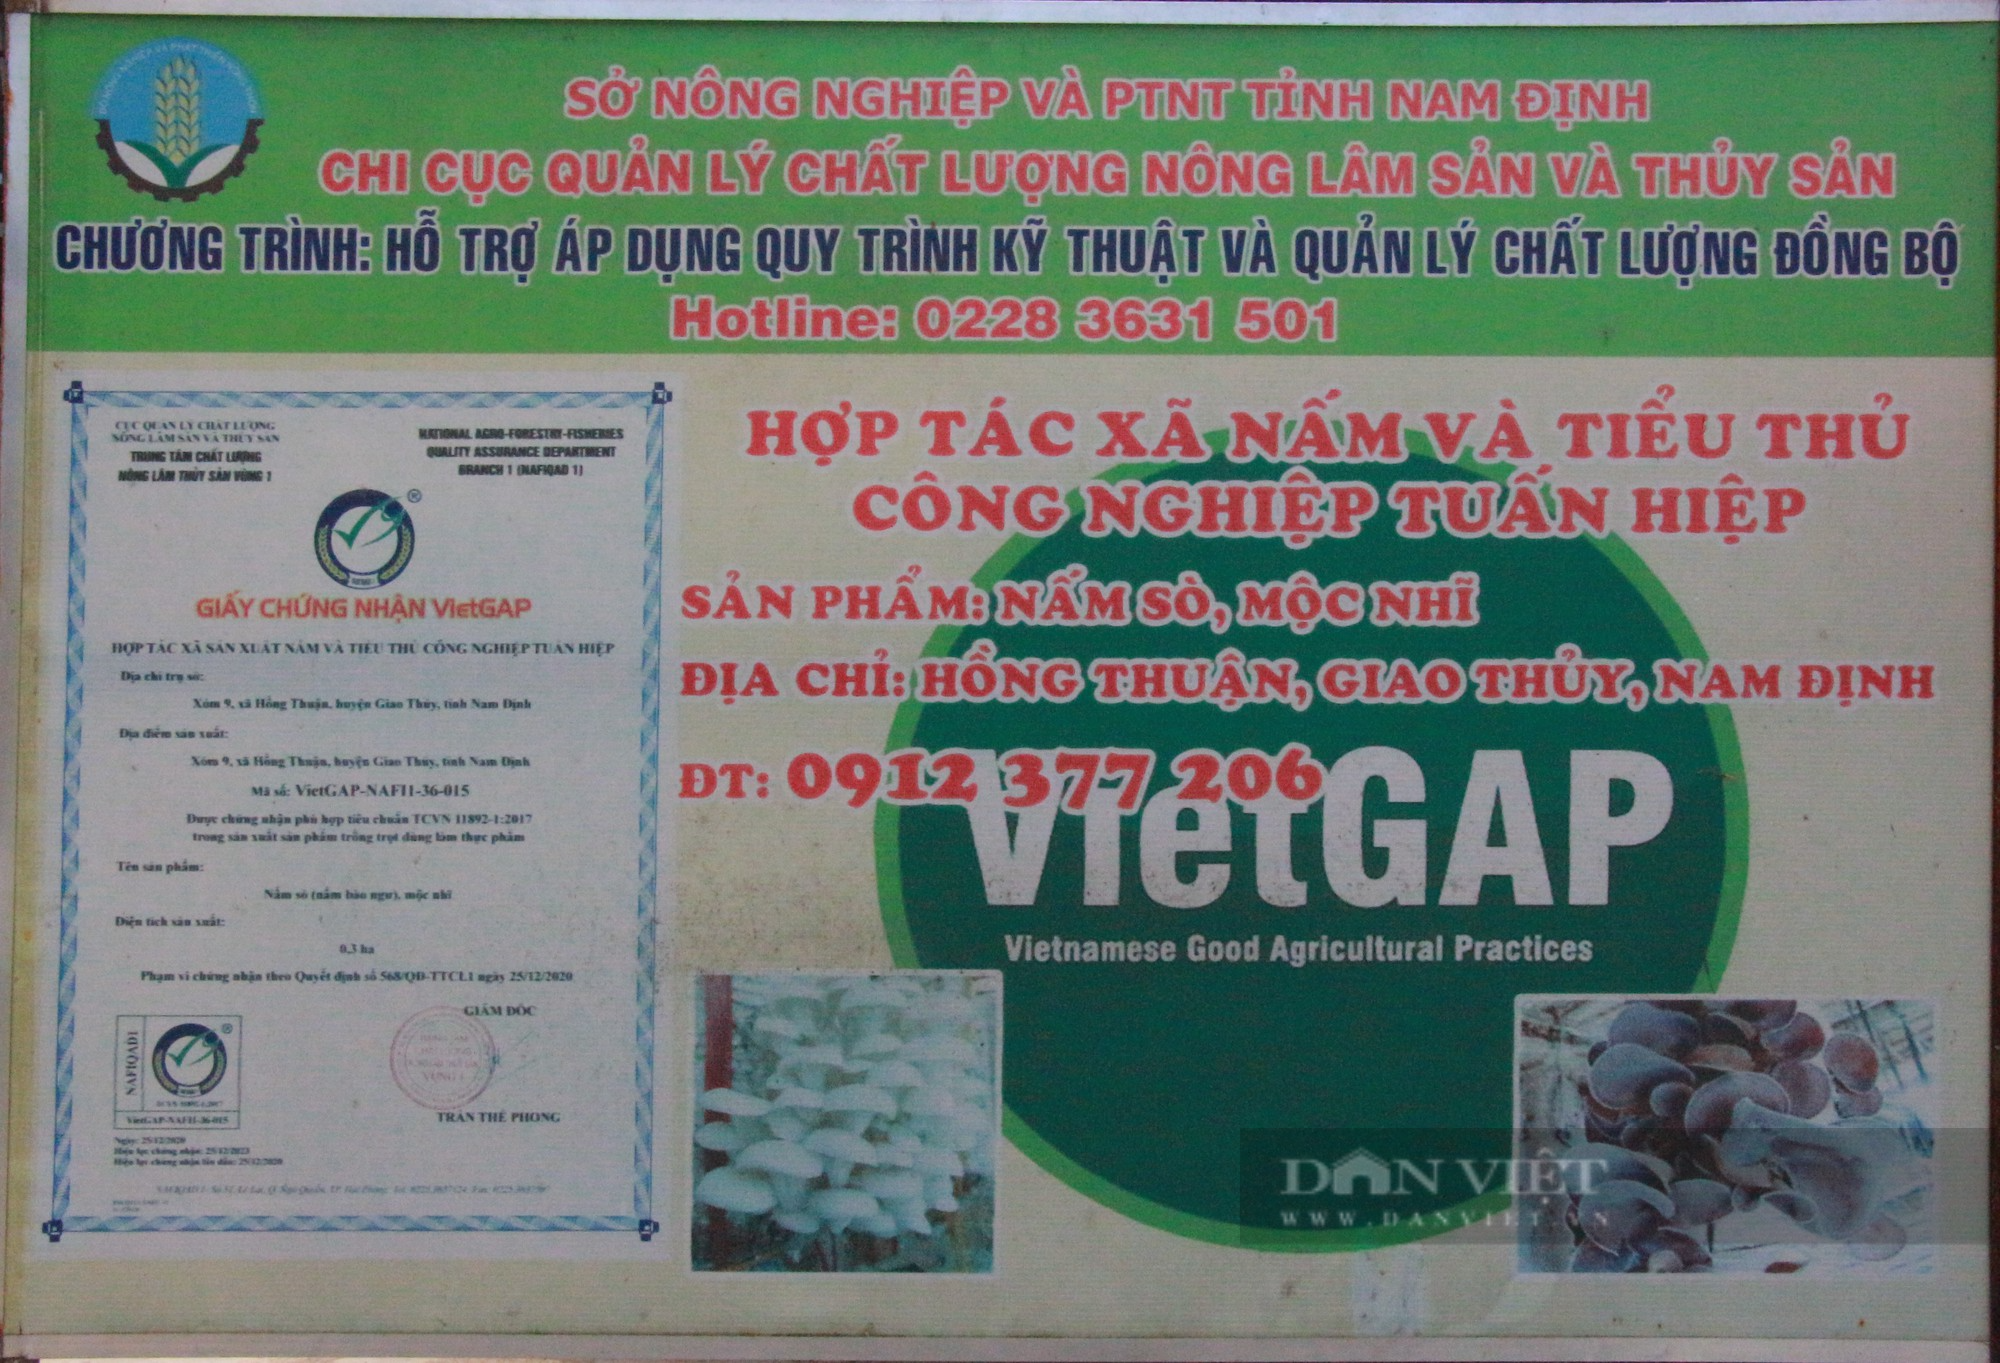 Một HTX sản xuất nấm sạch ở Nam Định vinh dự được Thủ tướng Chính phủ tặng Bằng khen - Ảnh 5.